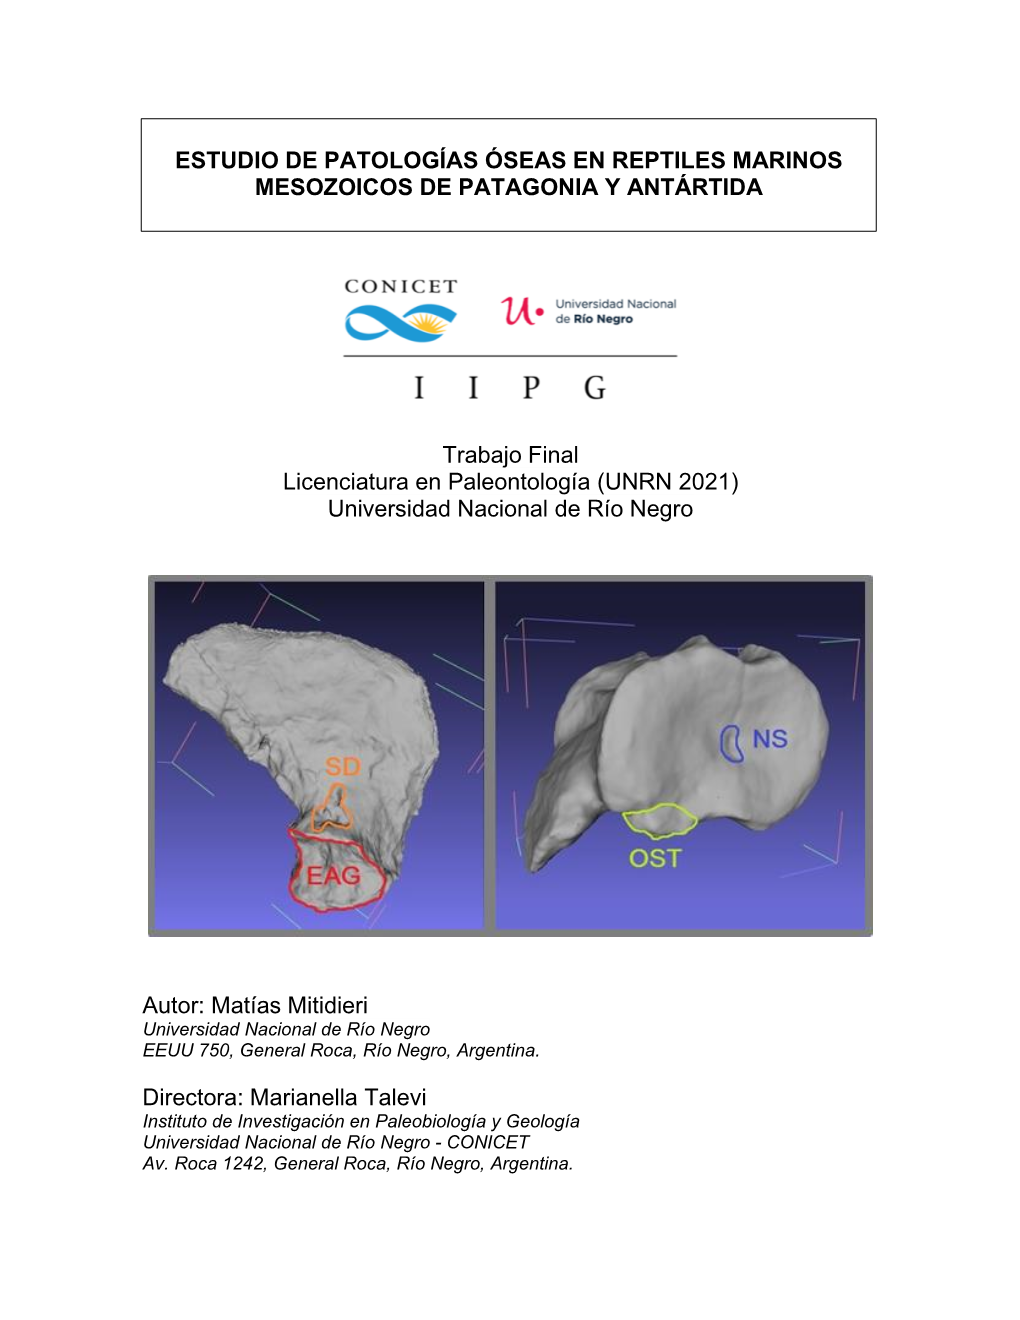 Mitidieri, M. Estudio De Patologías Óseas En Reptiles Marinos Mesozoicos De Patagonia Y Antártida